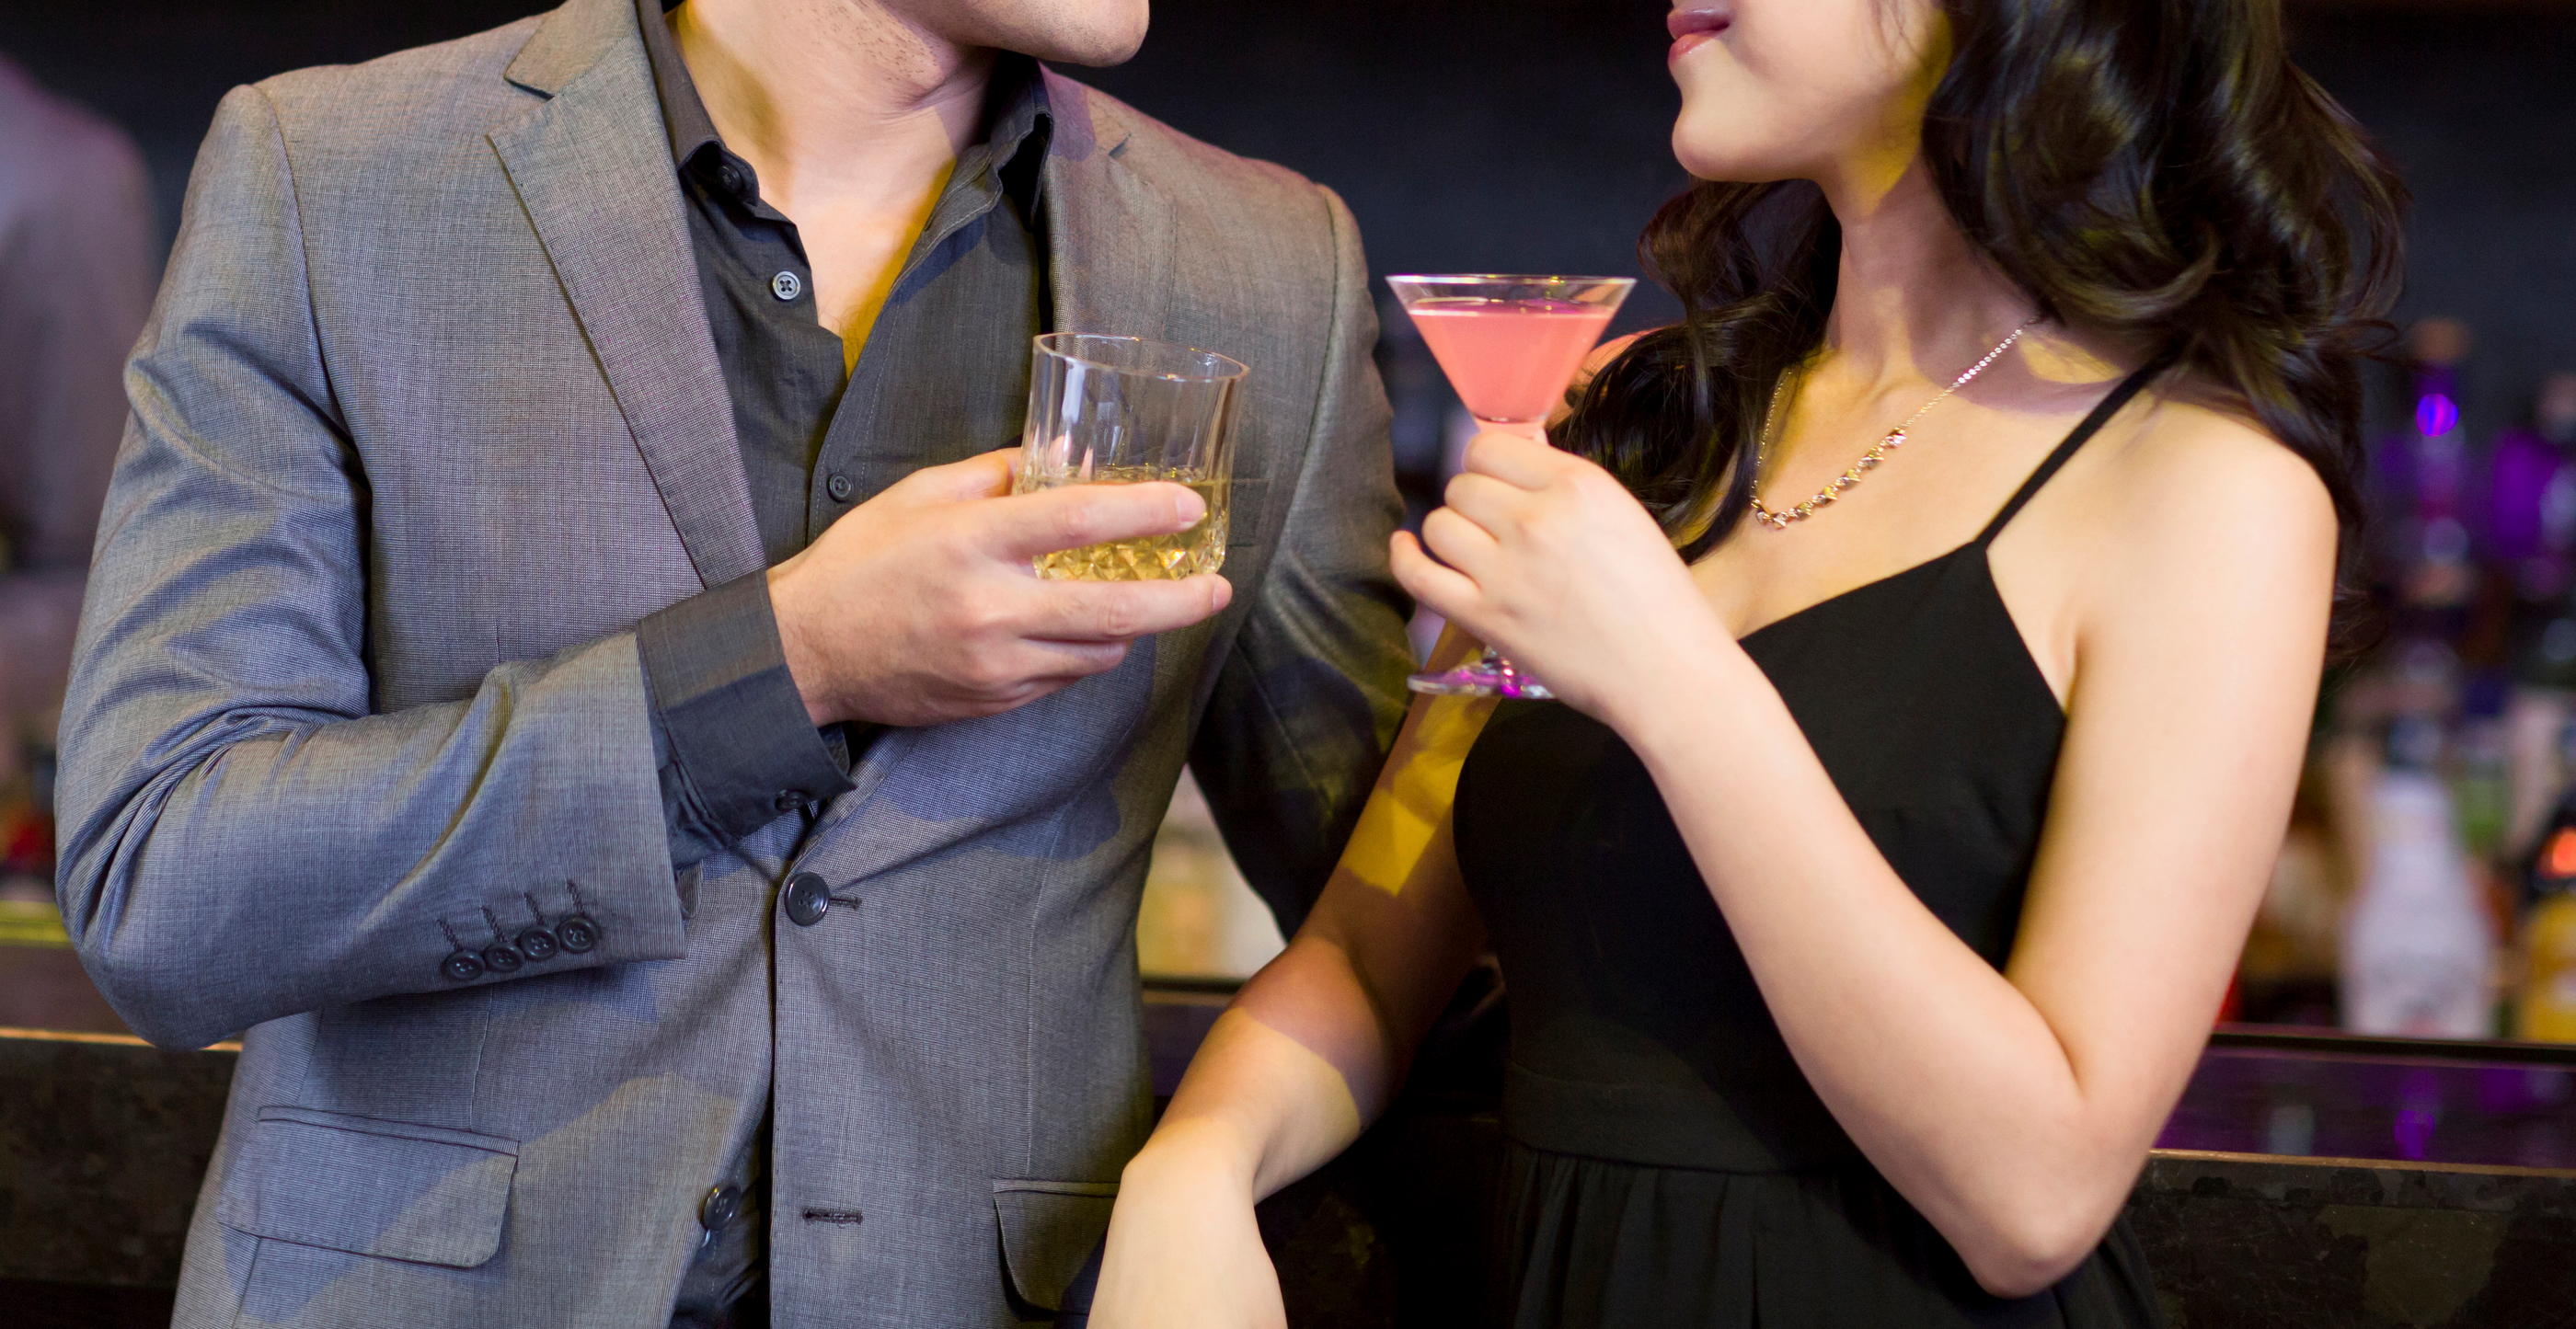 Certains hommes n'aiment pas se voir servir un cocktail dans un verre à l’apparence trop « féminine » selon eux. (Illustration) Getty Images/blue jean images RF